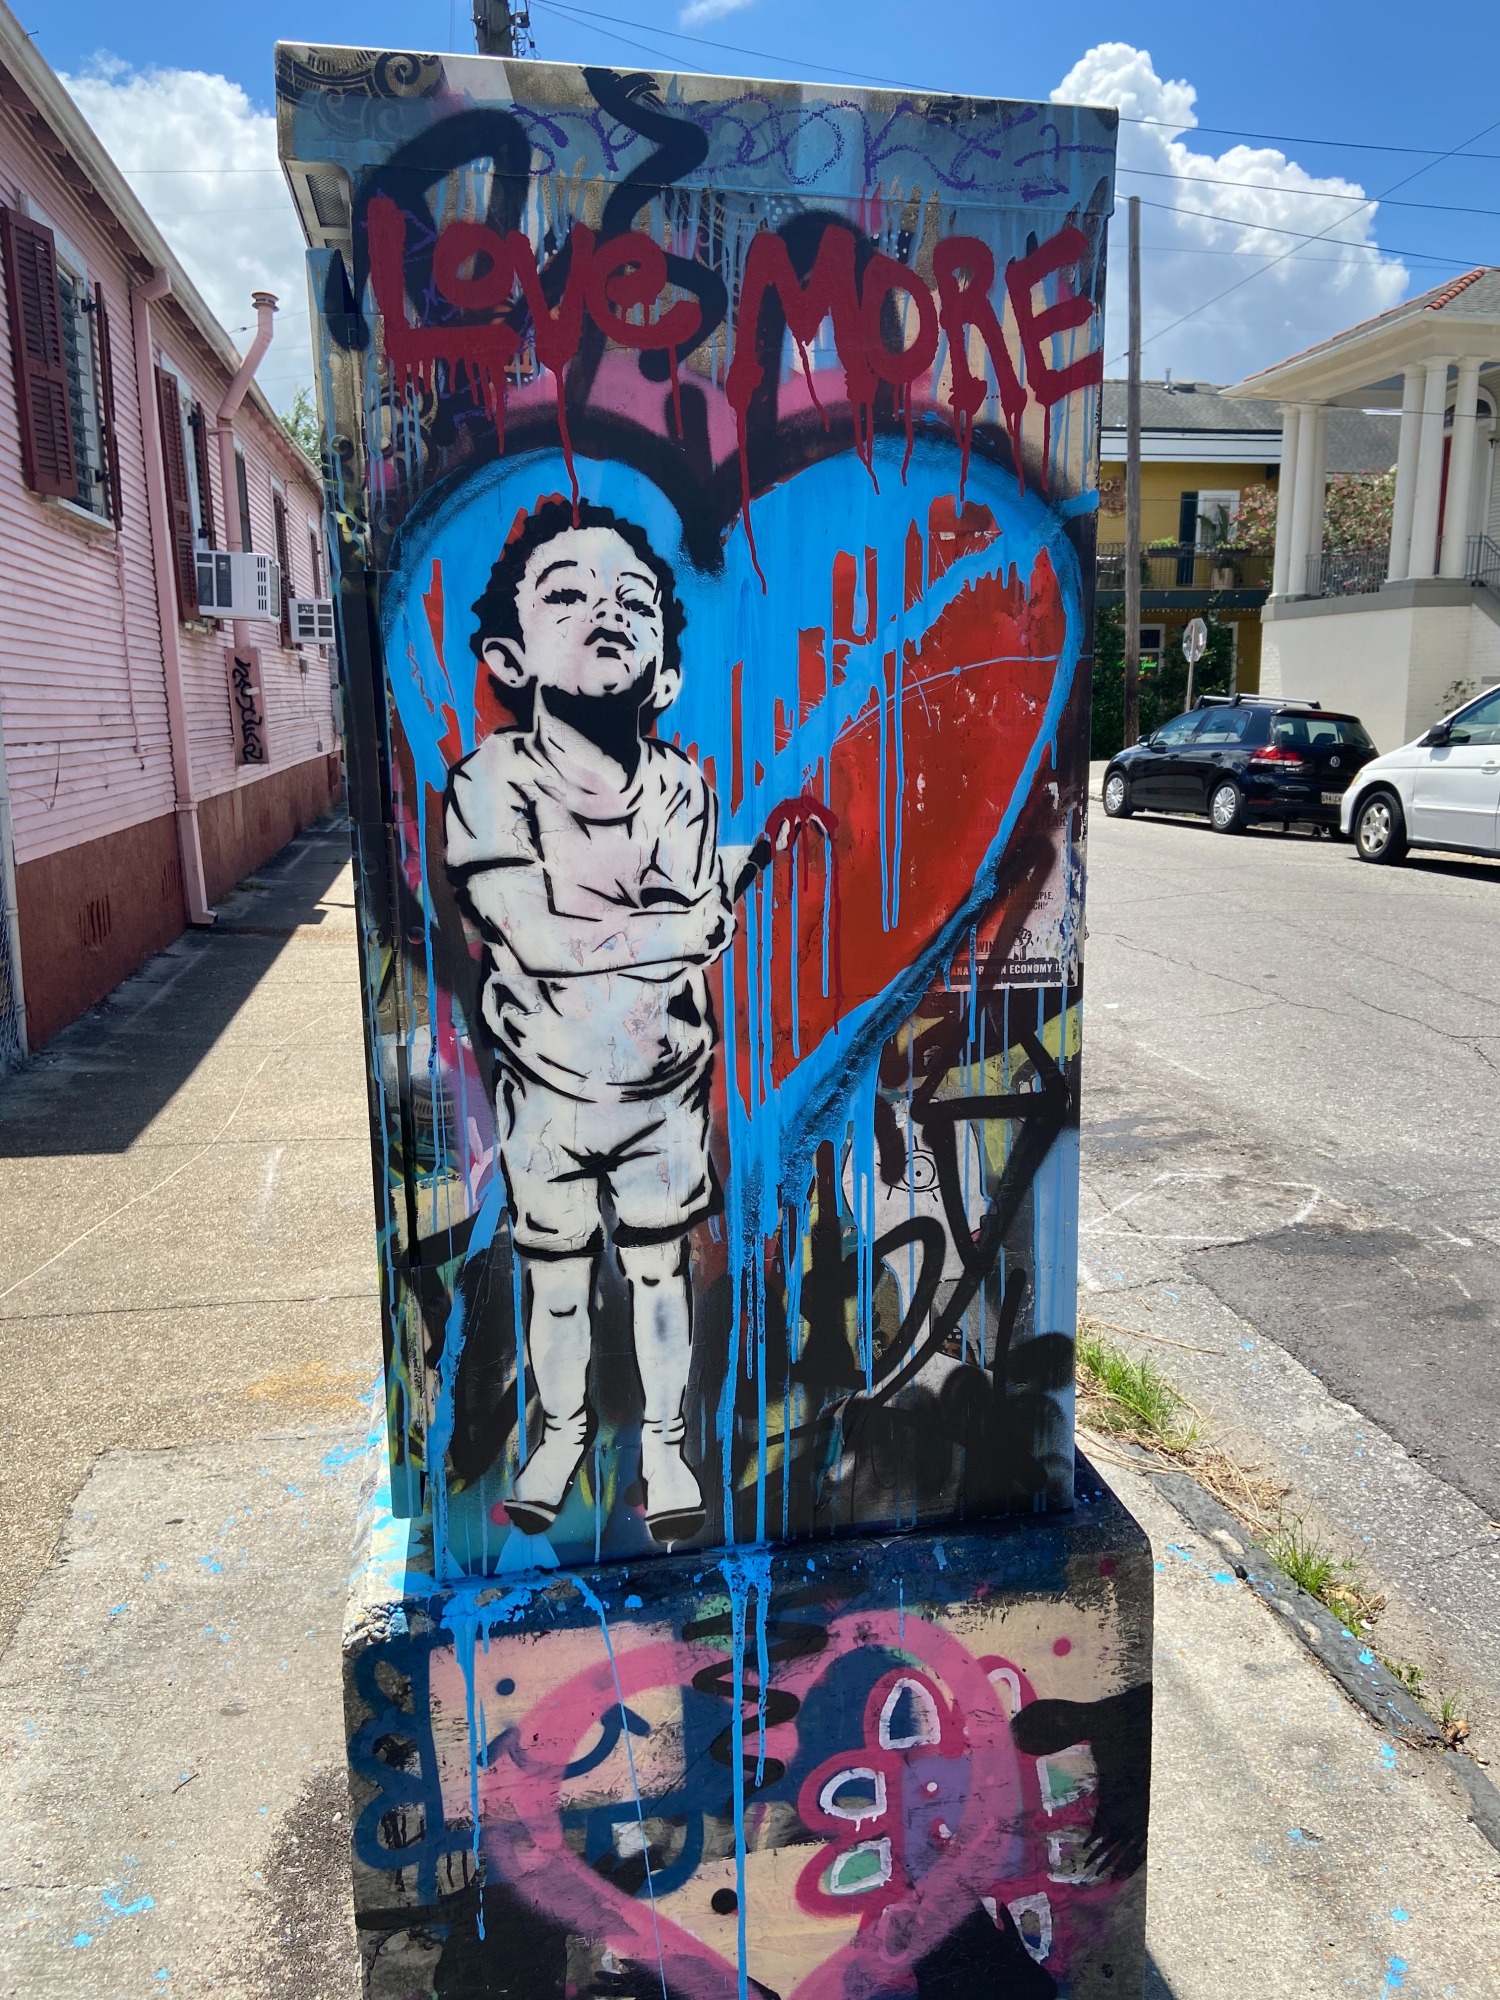 https://suddenshakeup.com/wp-content/uploads/2021/01/New-Orleans-artists-yo-follow-7.jpg